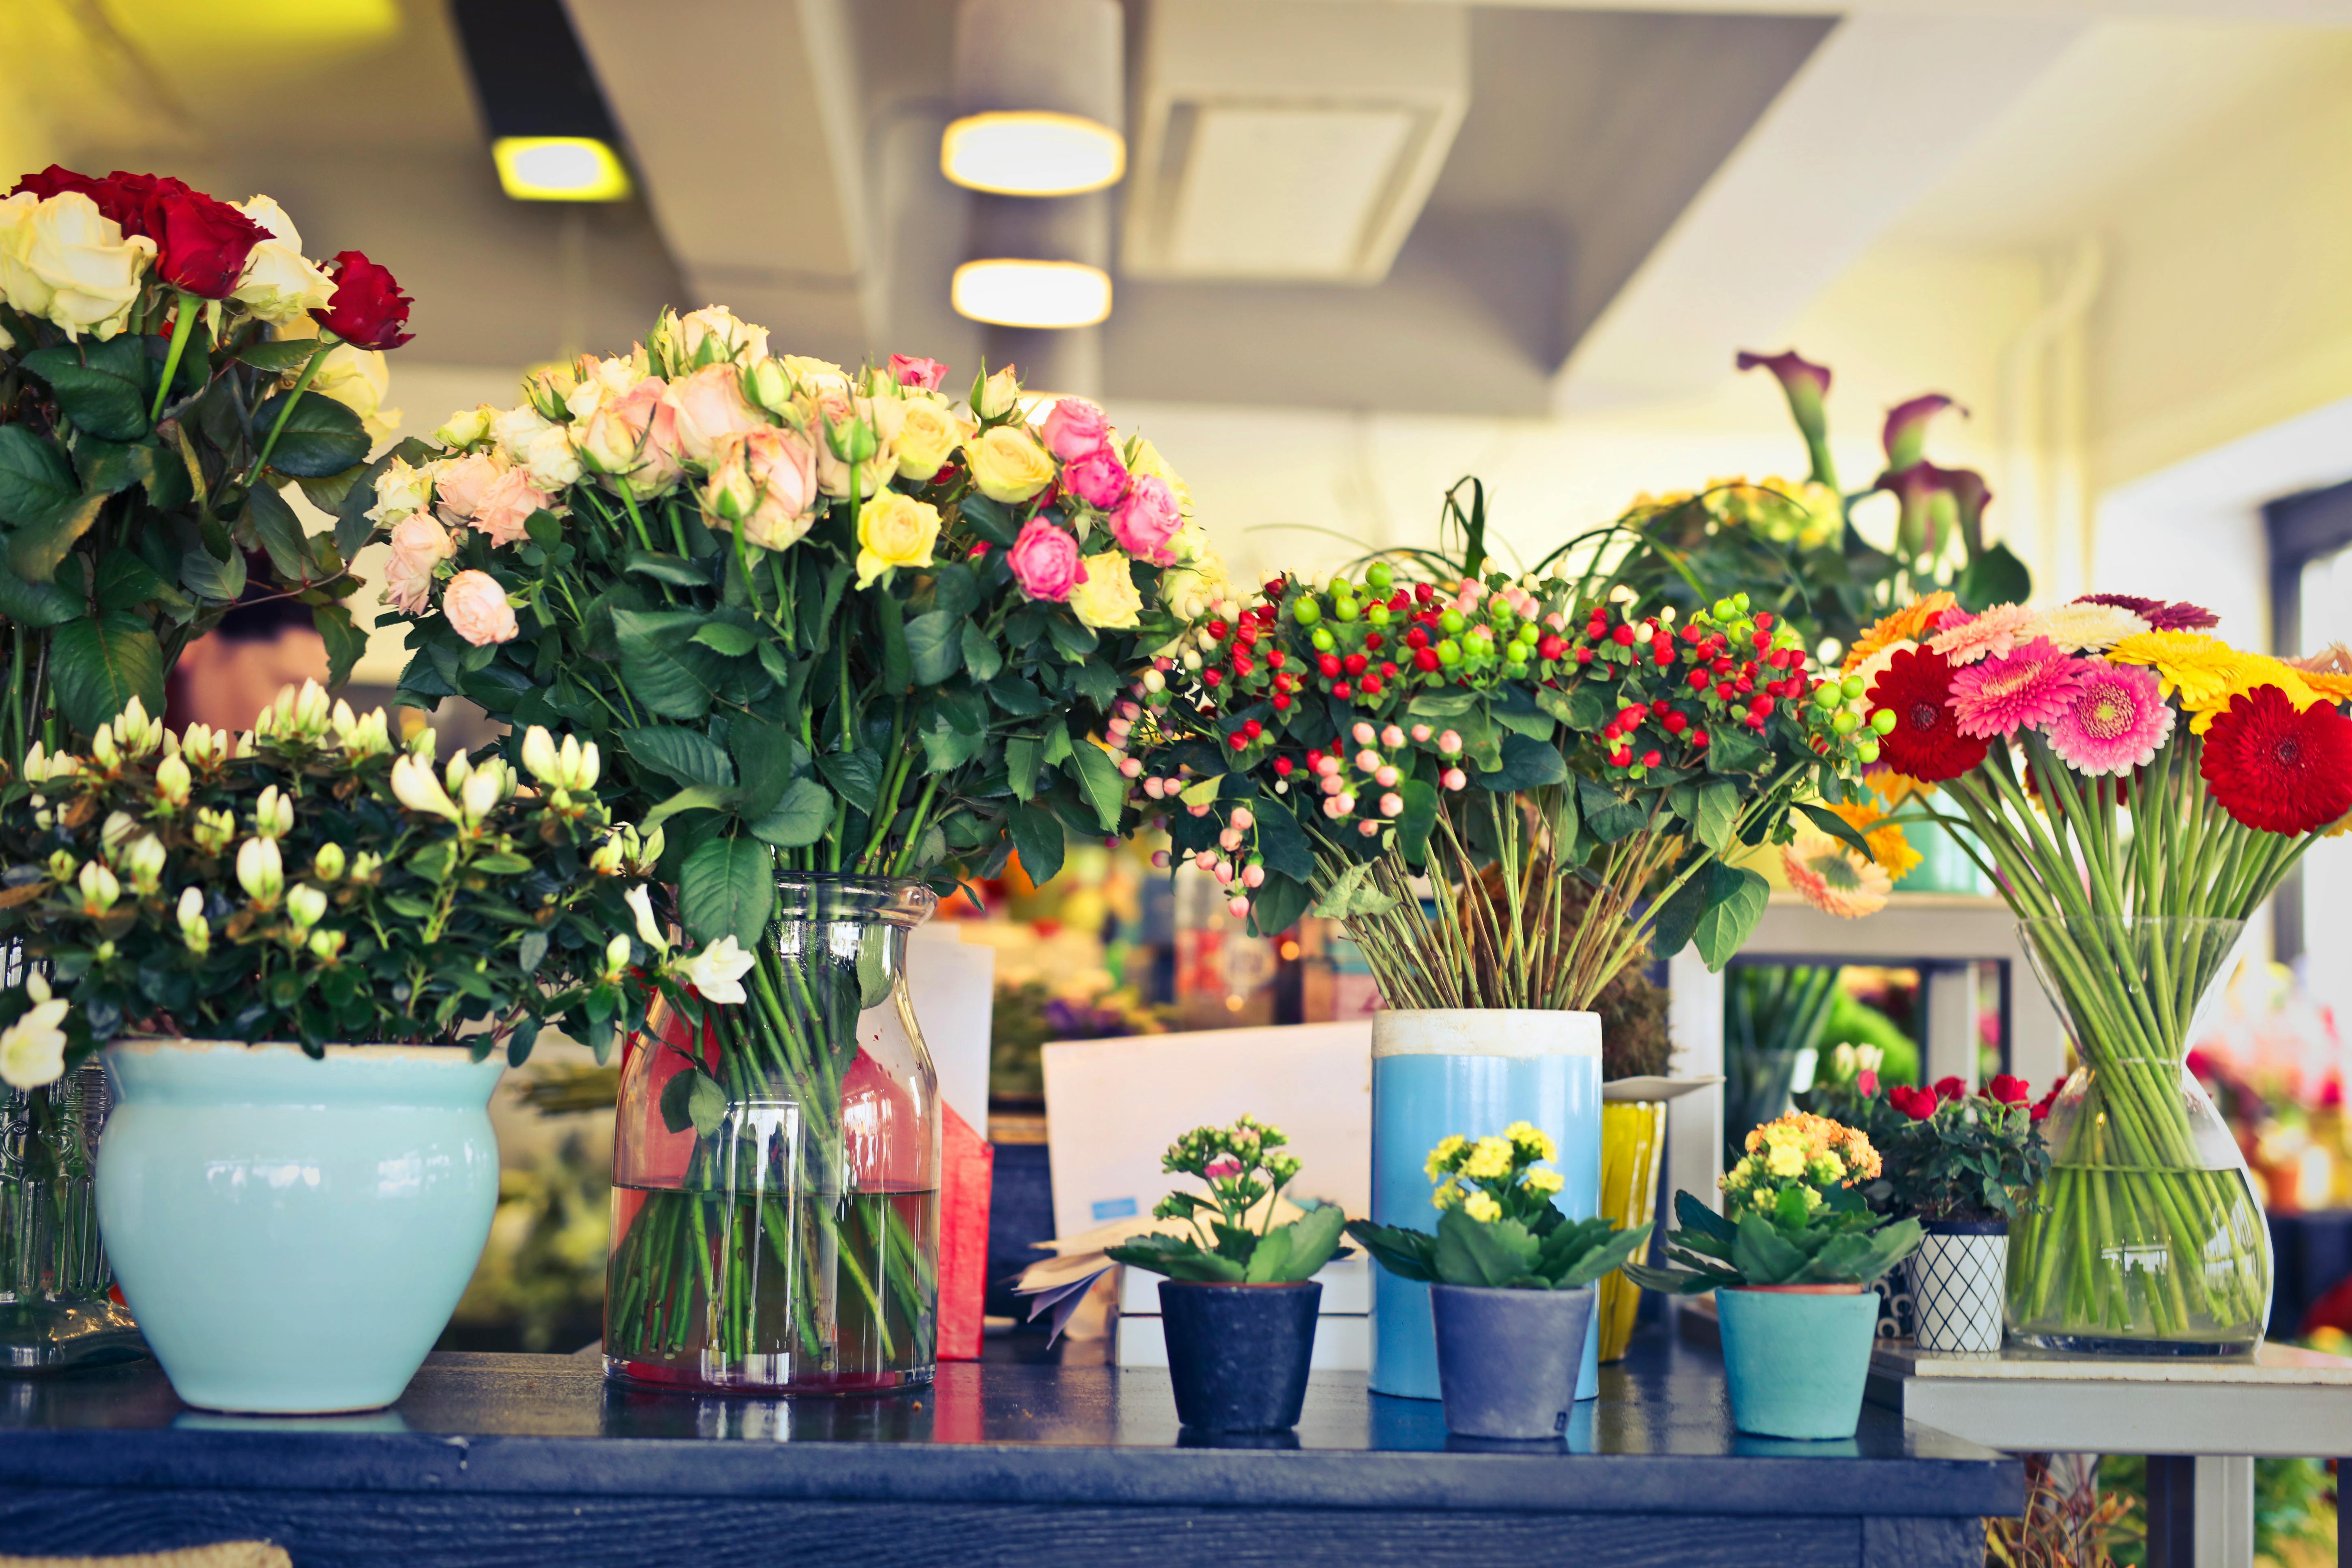 Une table remplie de fleurs et de vases | Source : Pexels